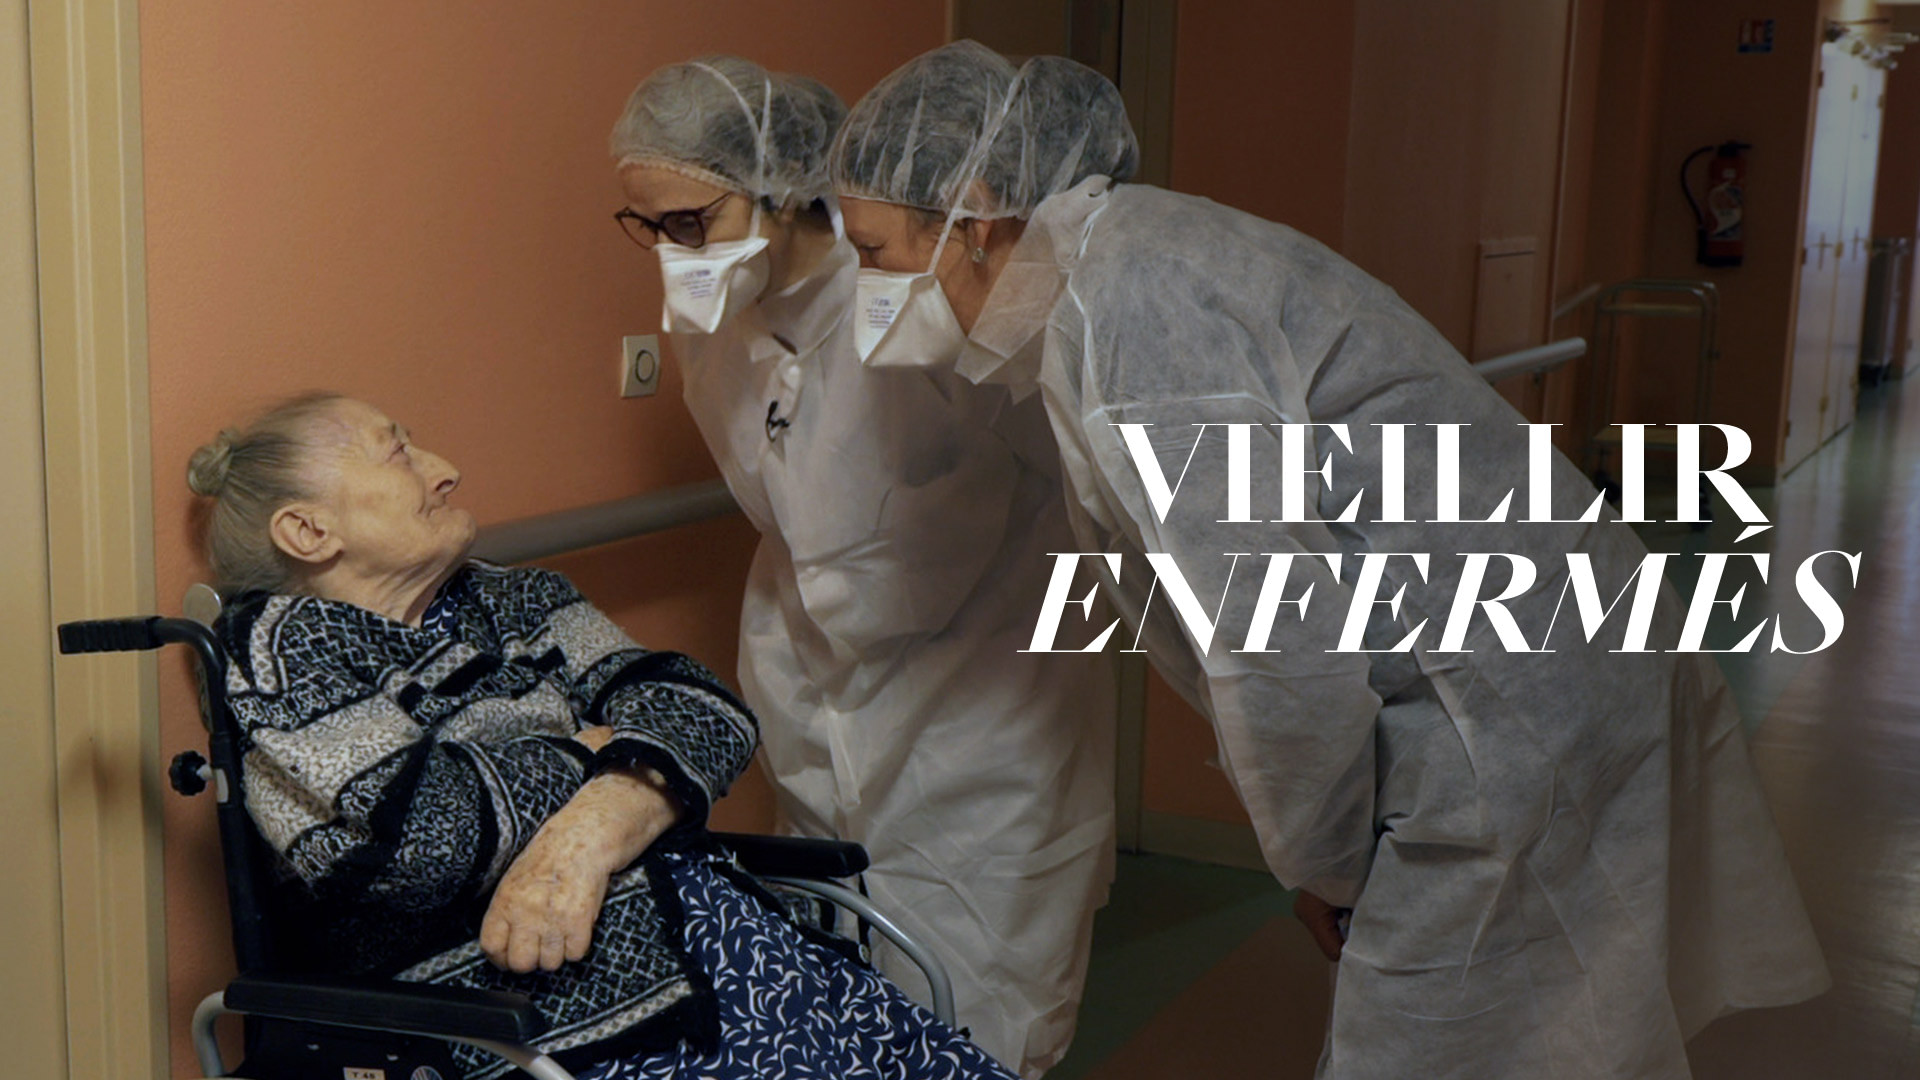 Vieillir enfermés - Regarder le documentaire complet | ARTE